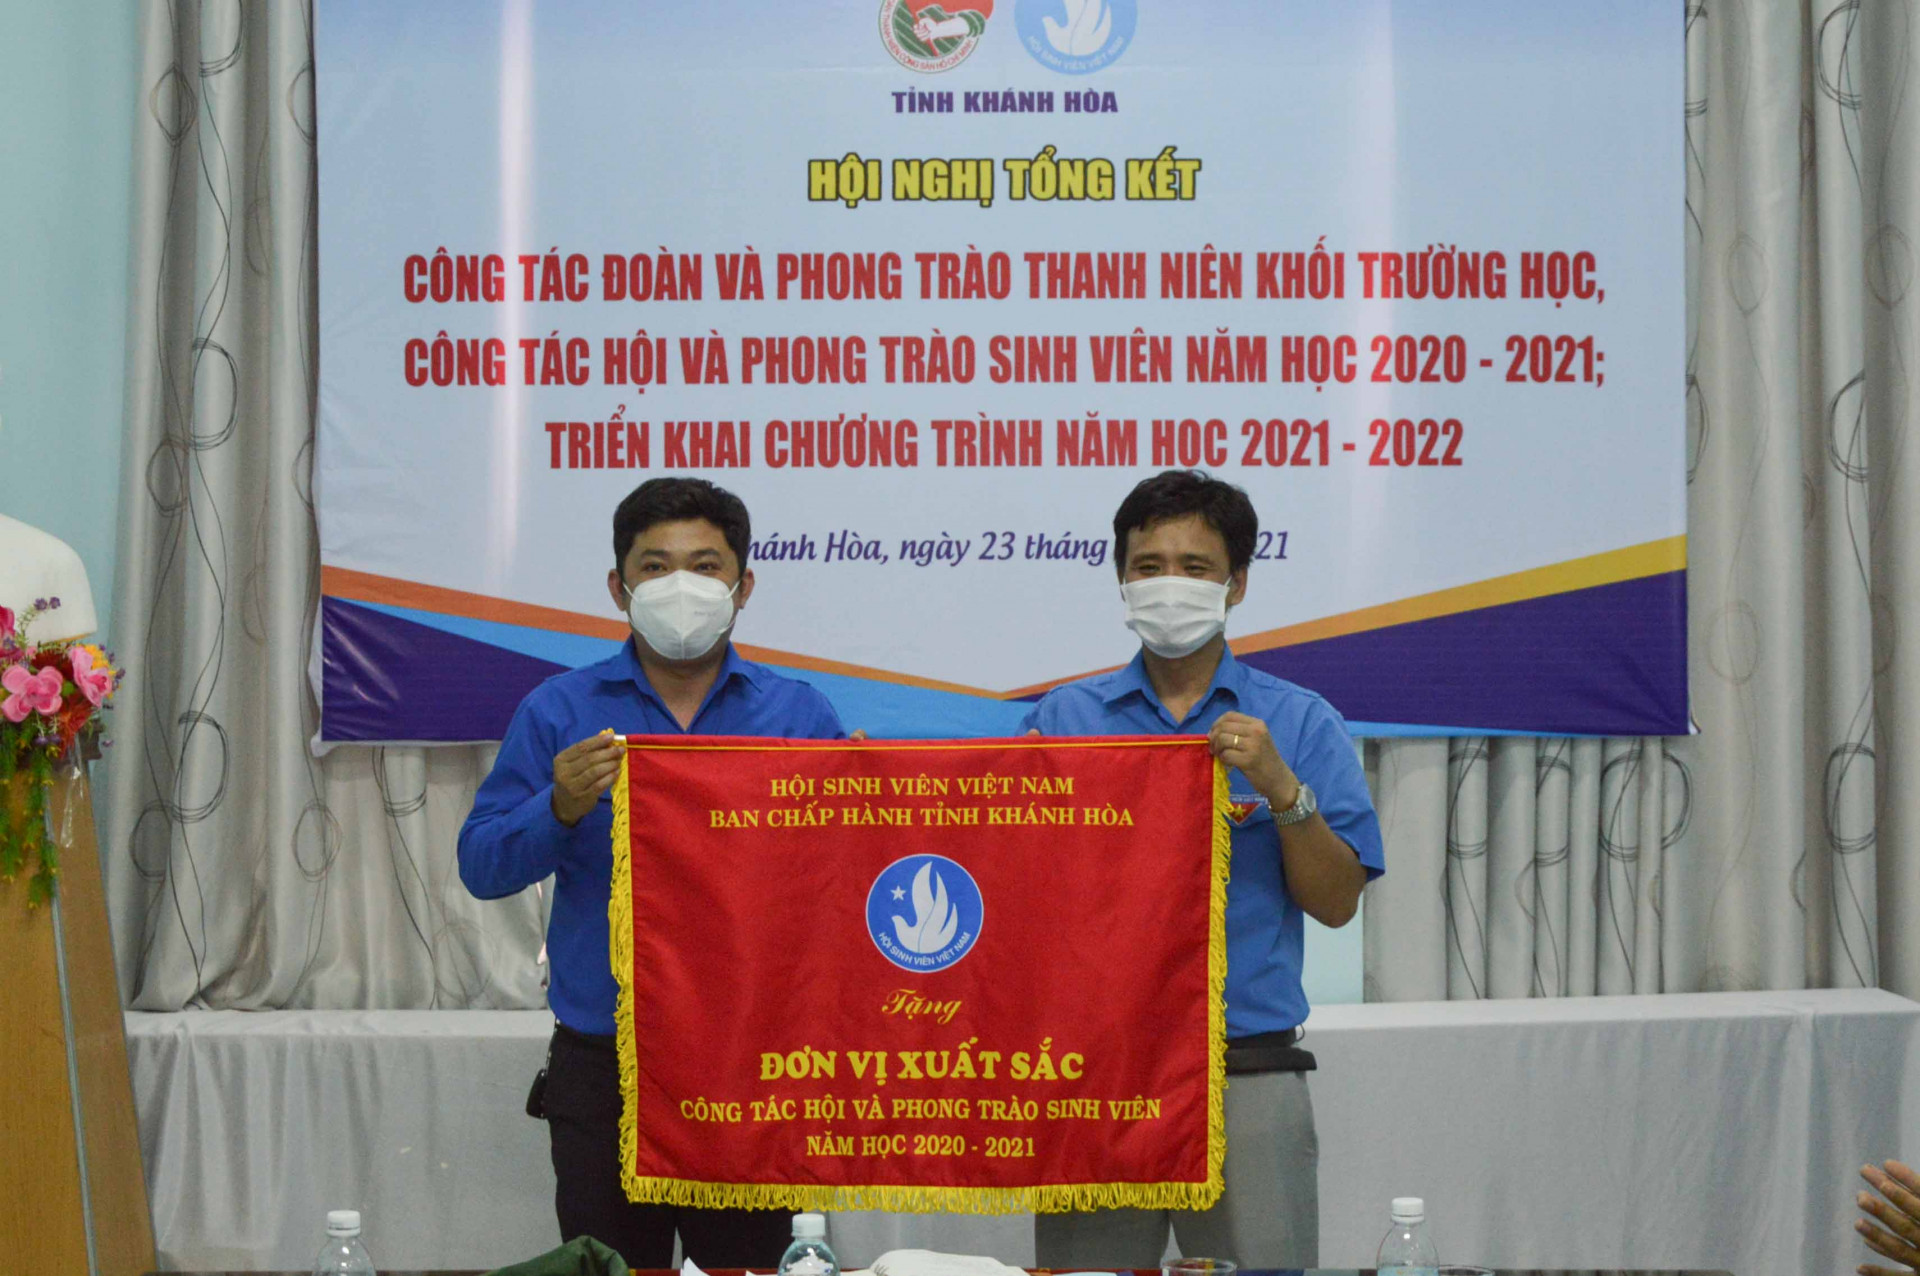 Tập thể đạt danh hiệu Đơn vị xuất sắc trong công tác Hội và phong trào sinh viên năm học 2020 - 2021 nhận cờ thi đua của Hội Sinh viên Việt Nam tỉnh